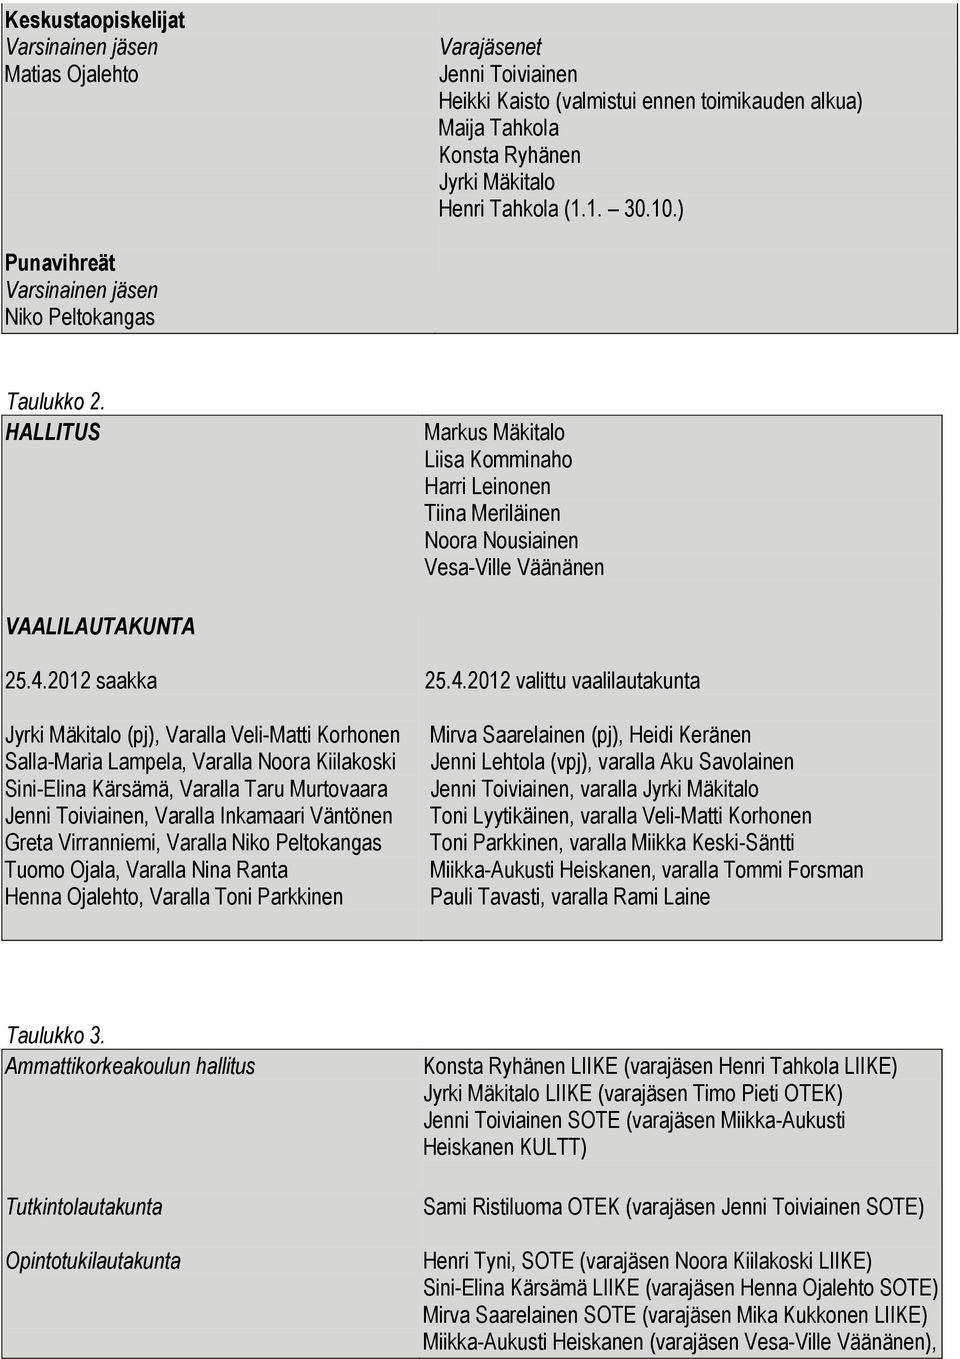 2012 saakka Jyrki Mäkitalo (pj), Varalla Veli-Matti Korhonen Salla-Maria Lampela, Varalla Noora Kiilakoski Sini-Elina Kärsämä, Varalla Taru Murtovaara Jenni Toiviainen, Varalla Inkamaari Väntönen